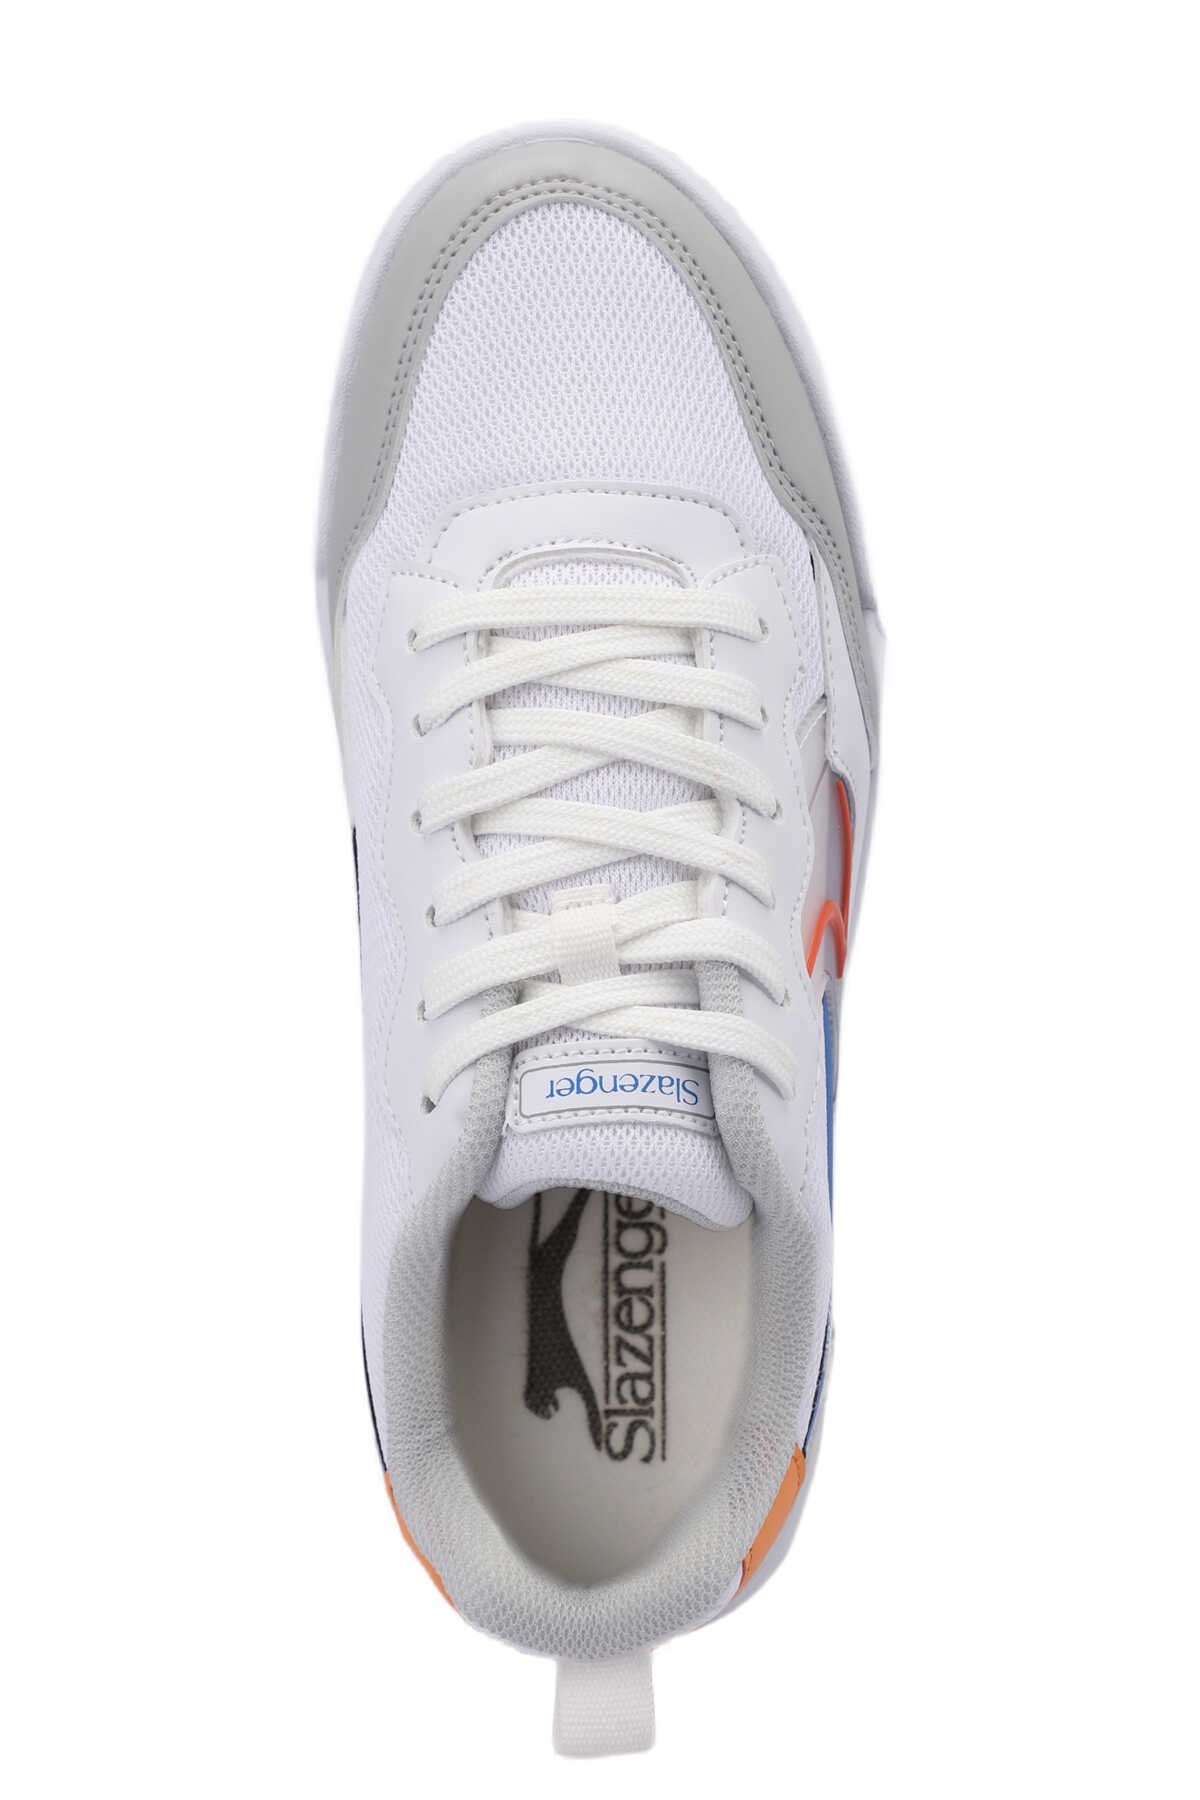 Slazenger BARBRO Sneaker Kadın Ayakkabı Beyaz / Turuncu